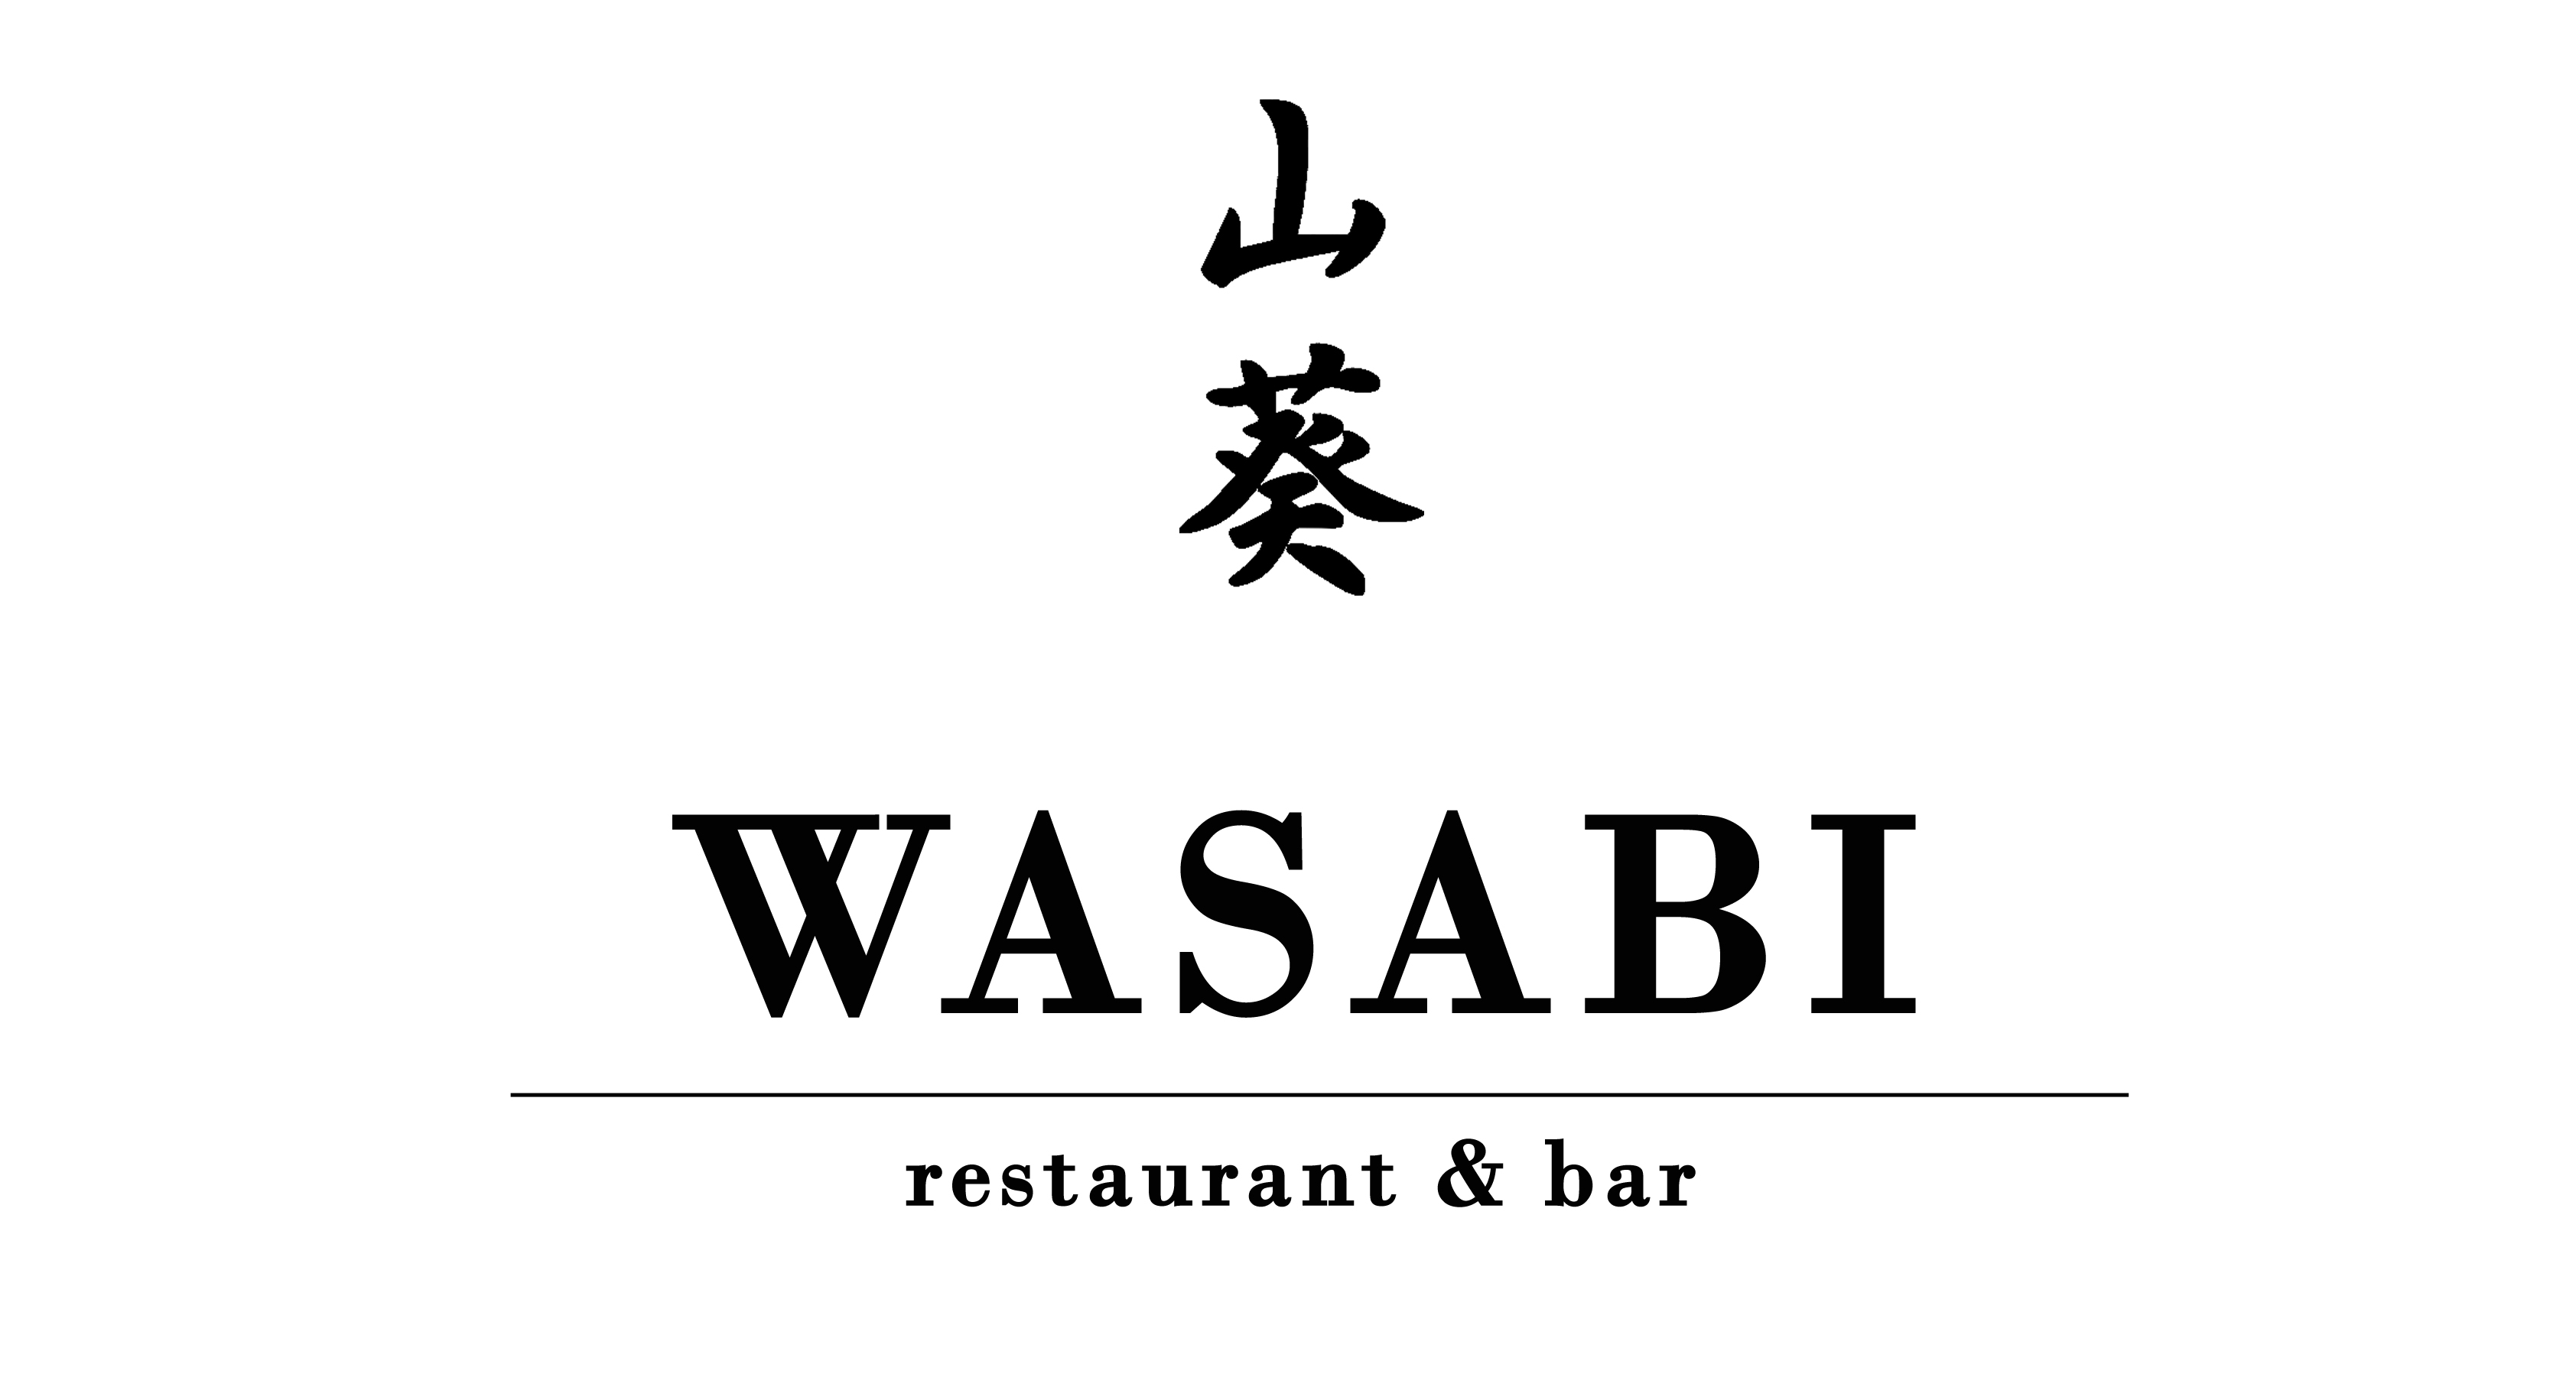 Wasabi Restaurant & Bar - Noosa